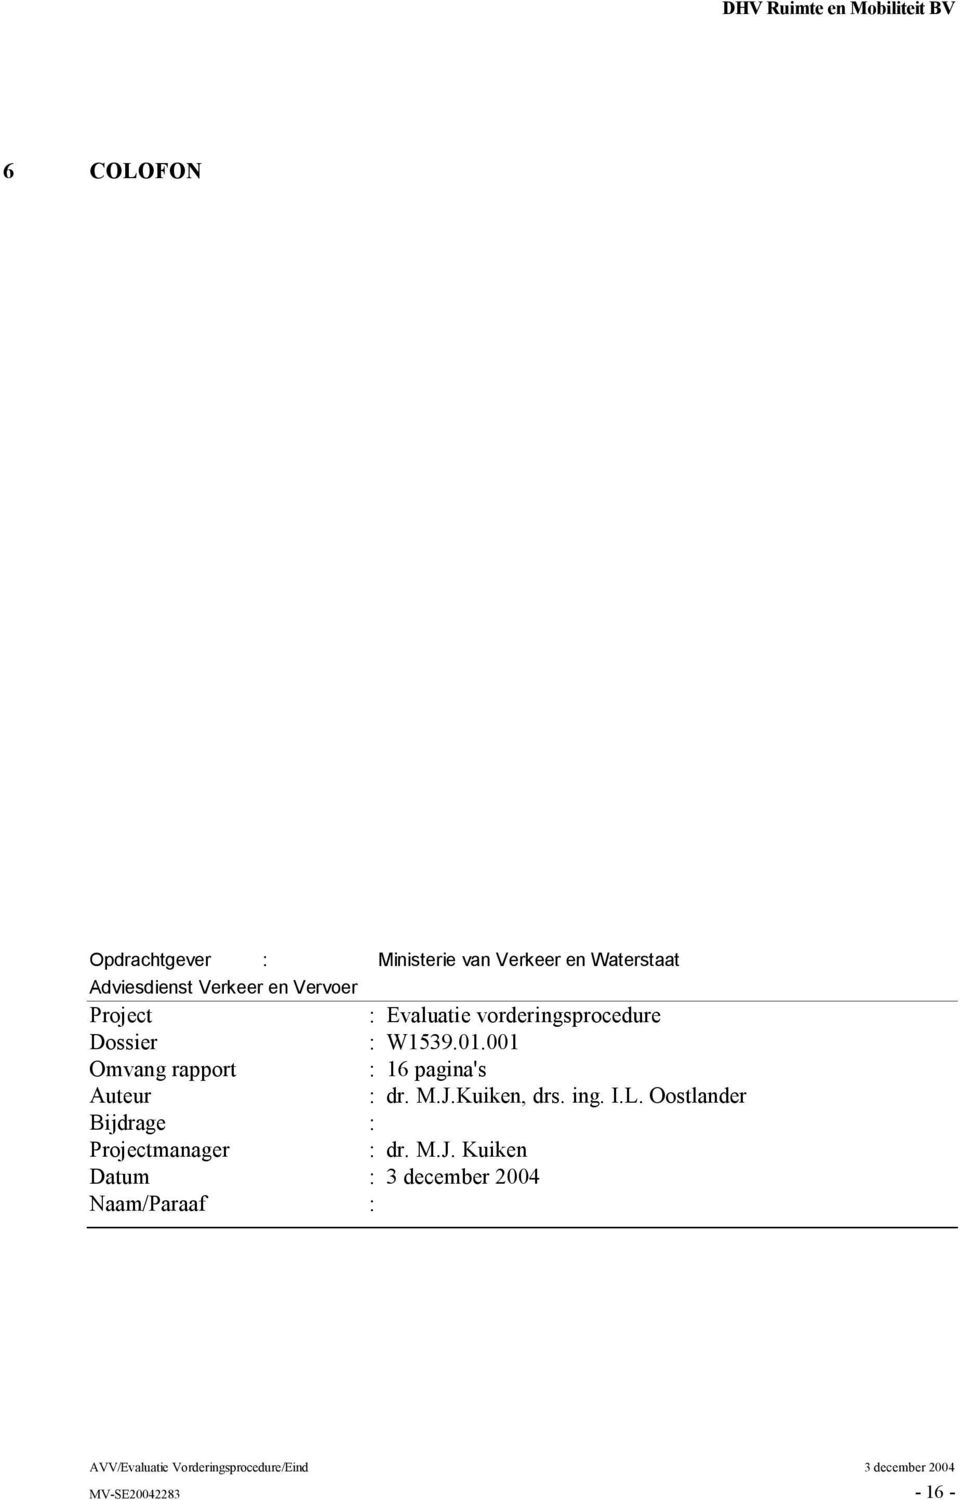 Dossier : W1539.01.001 Omvang rapport : 16 pagina's Auteur : dr. M.J.Kuiken, drs. ing. I.L.